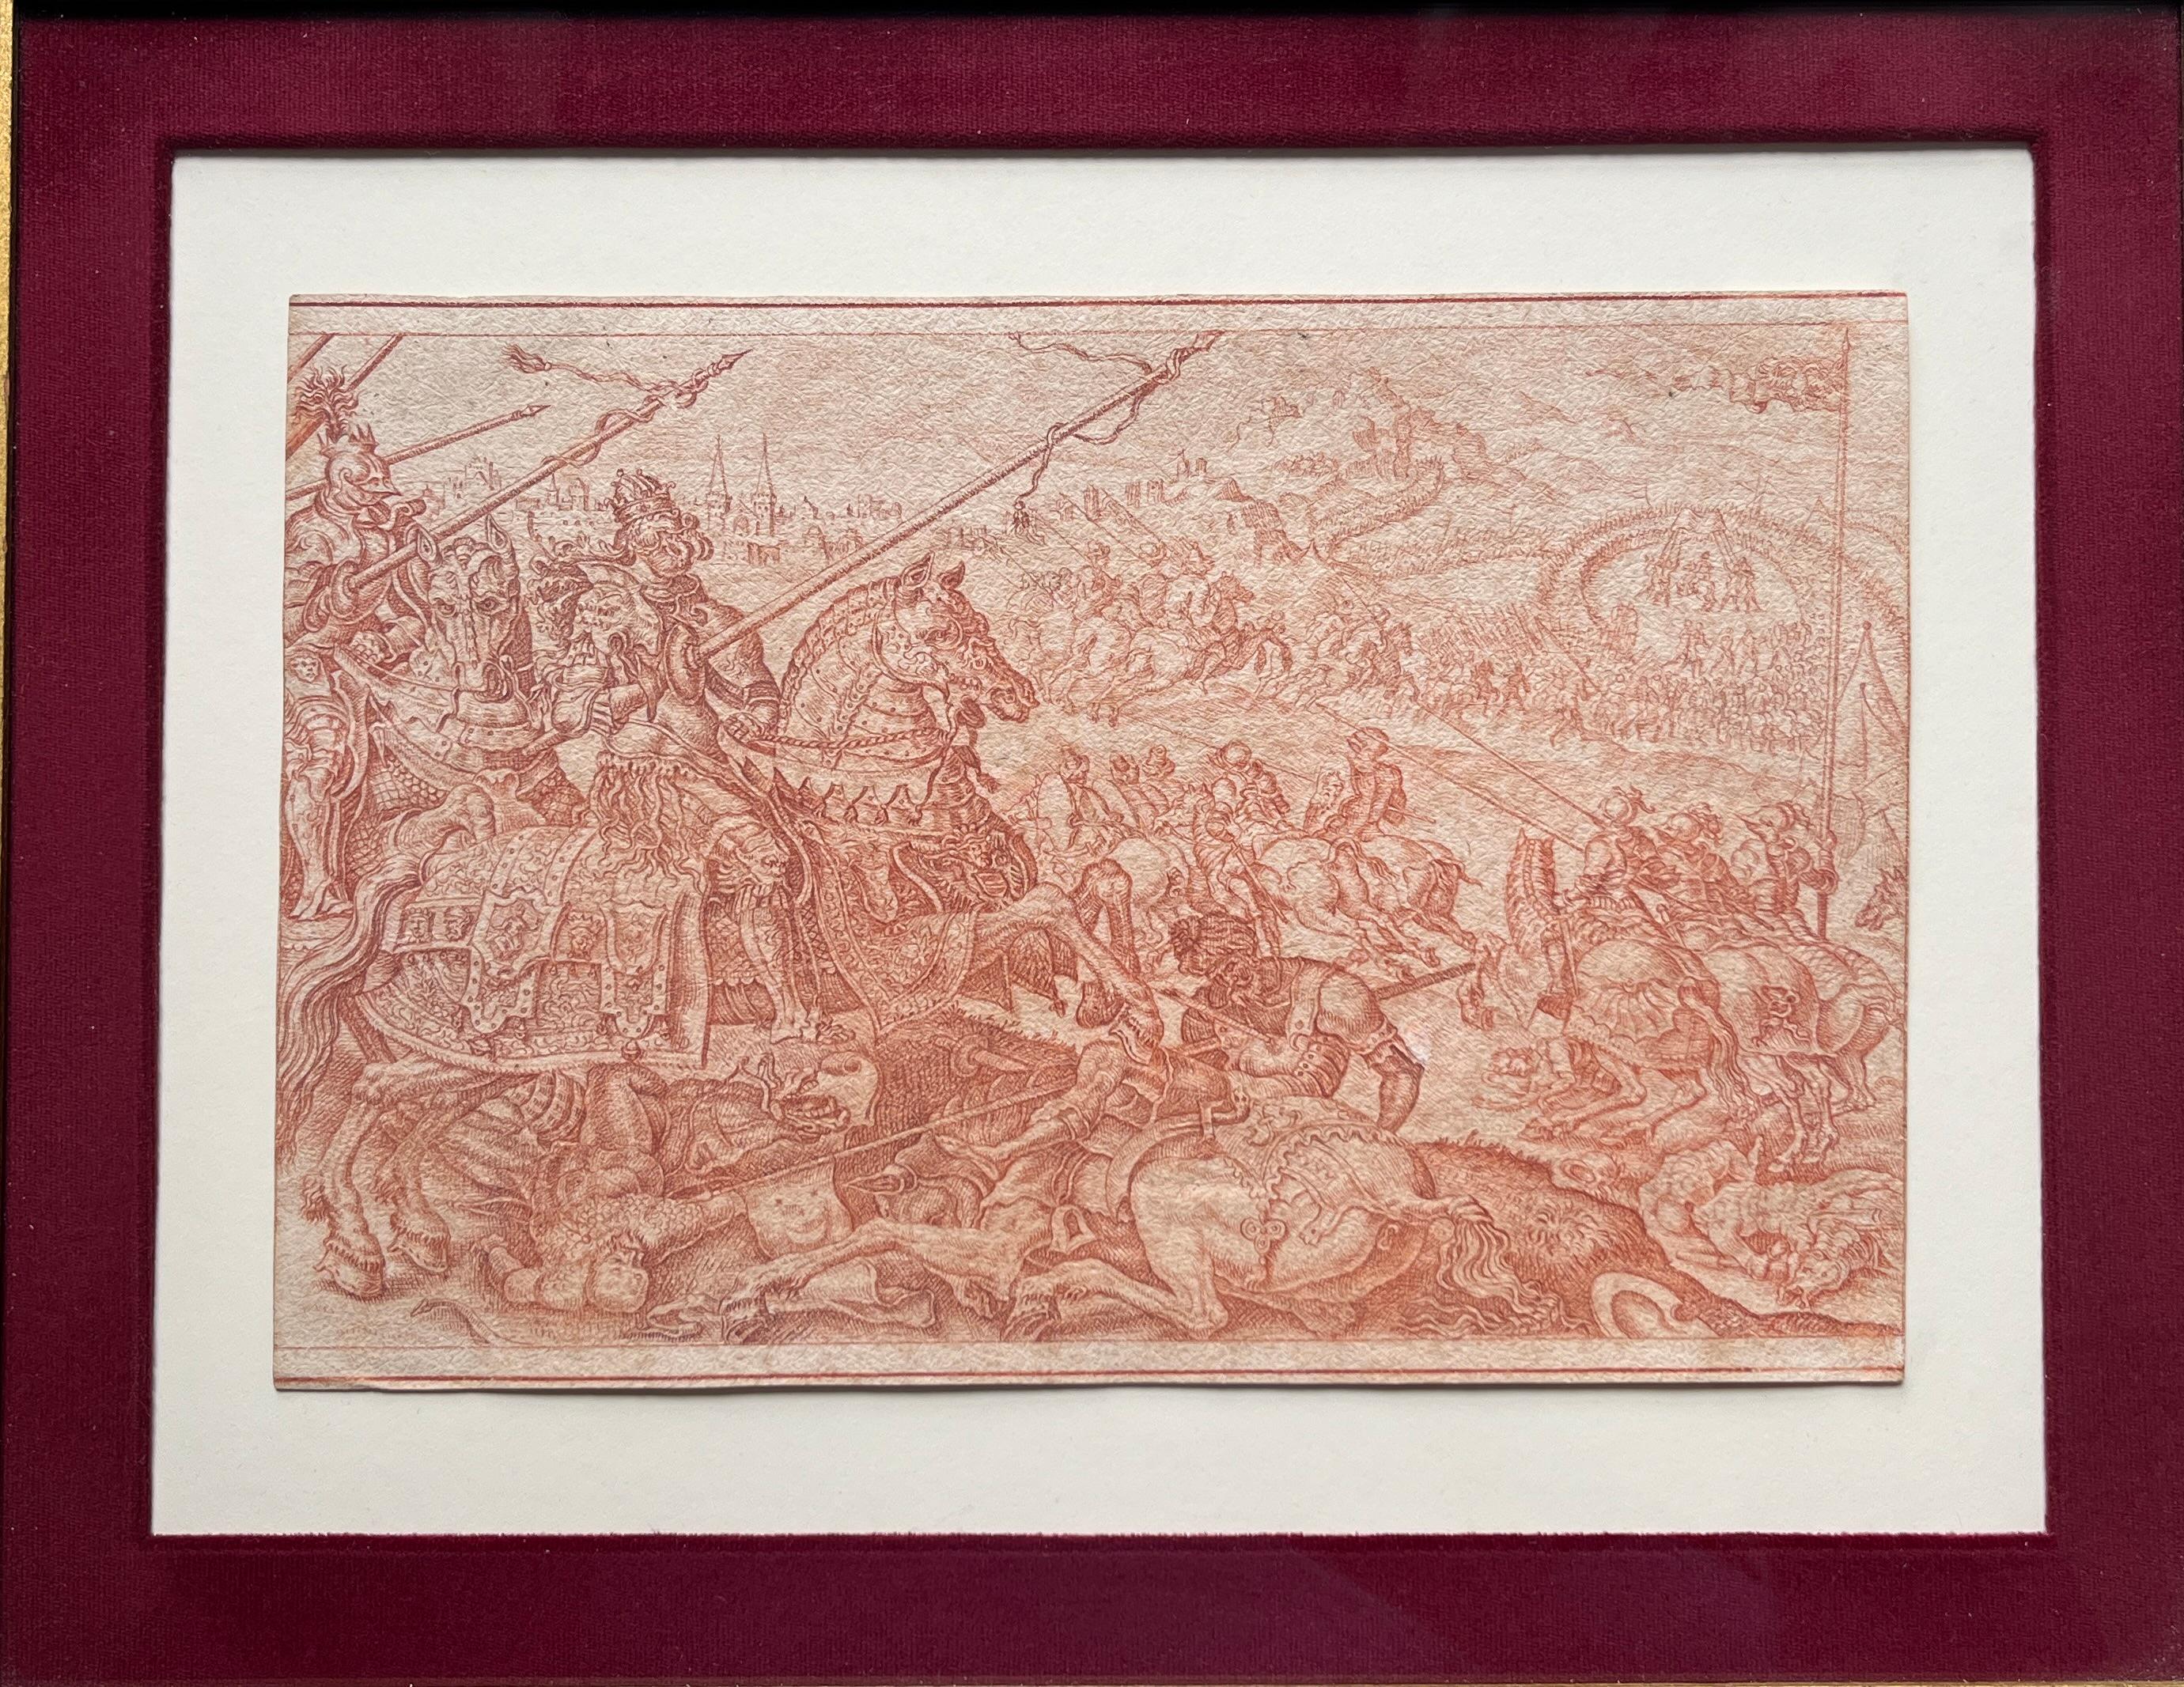 Rococo Red chalk Old Master Sketch of a Battle Scene after Maarten van Heemskerck